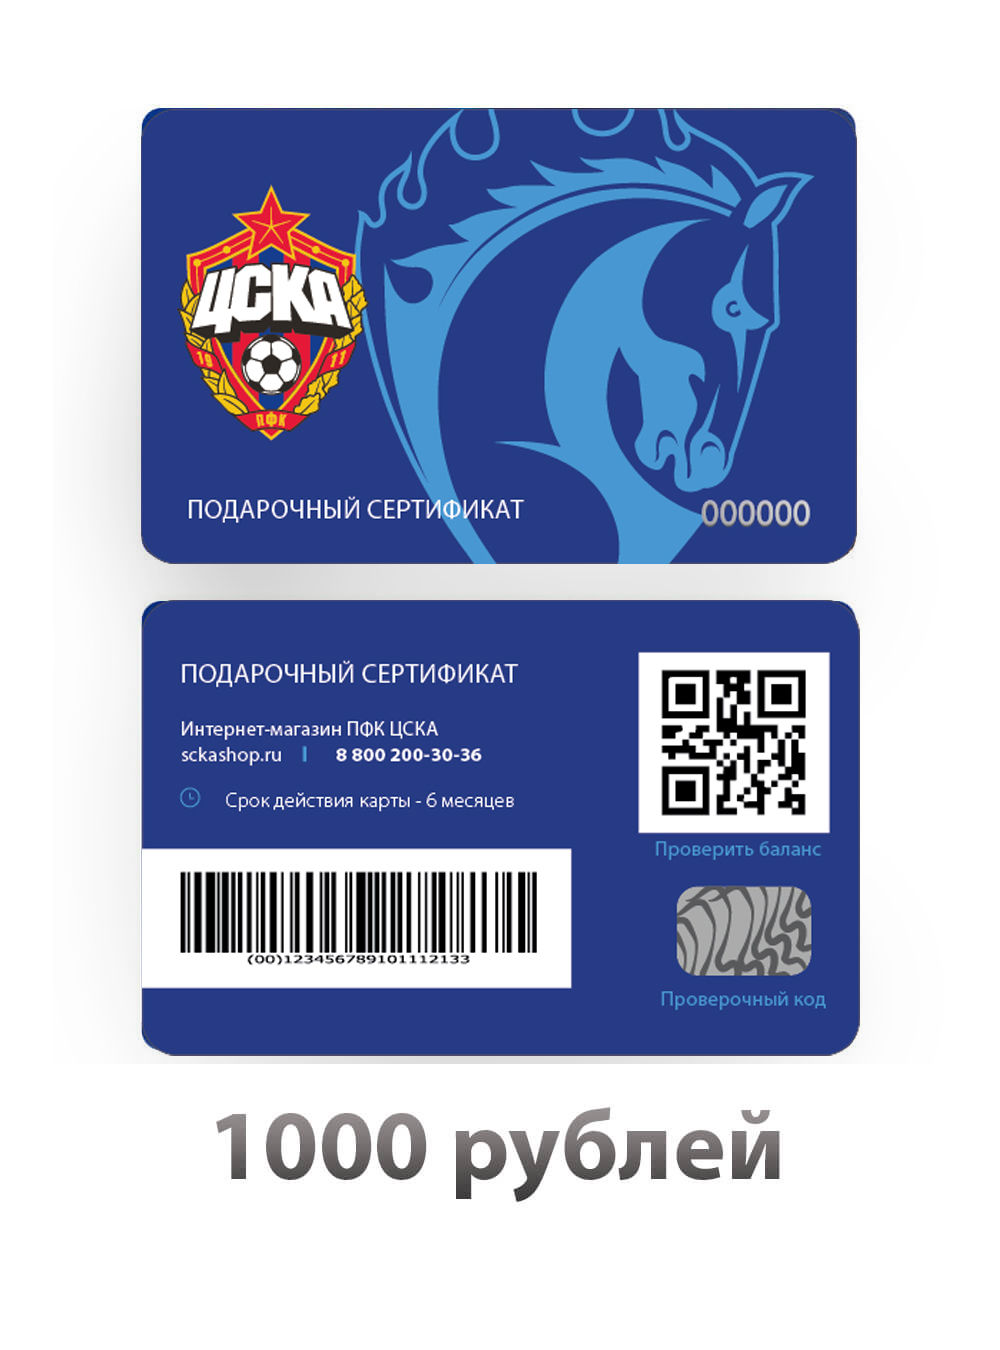 Подарочный сертификат на 1000 рублей (Подарочная карта на 1000 рублей) от Cskashop